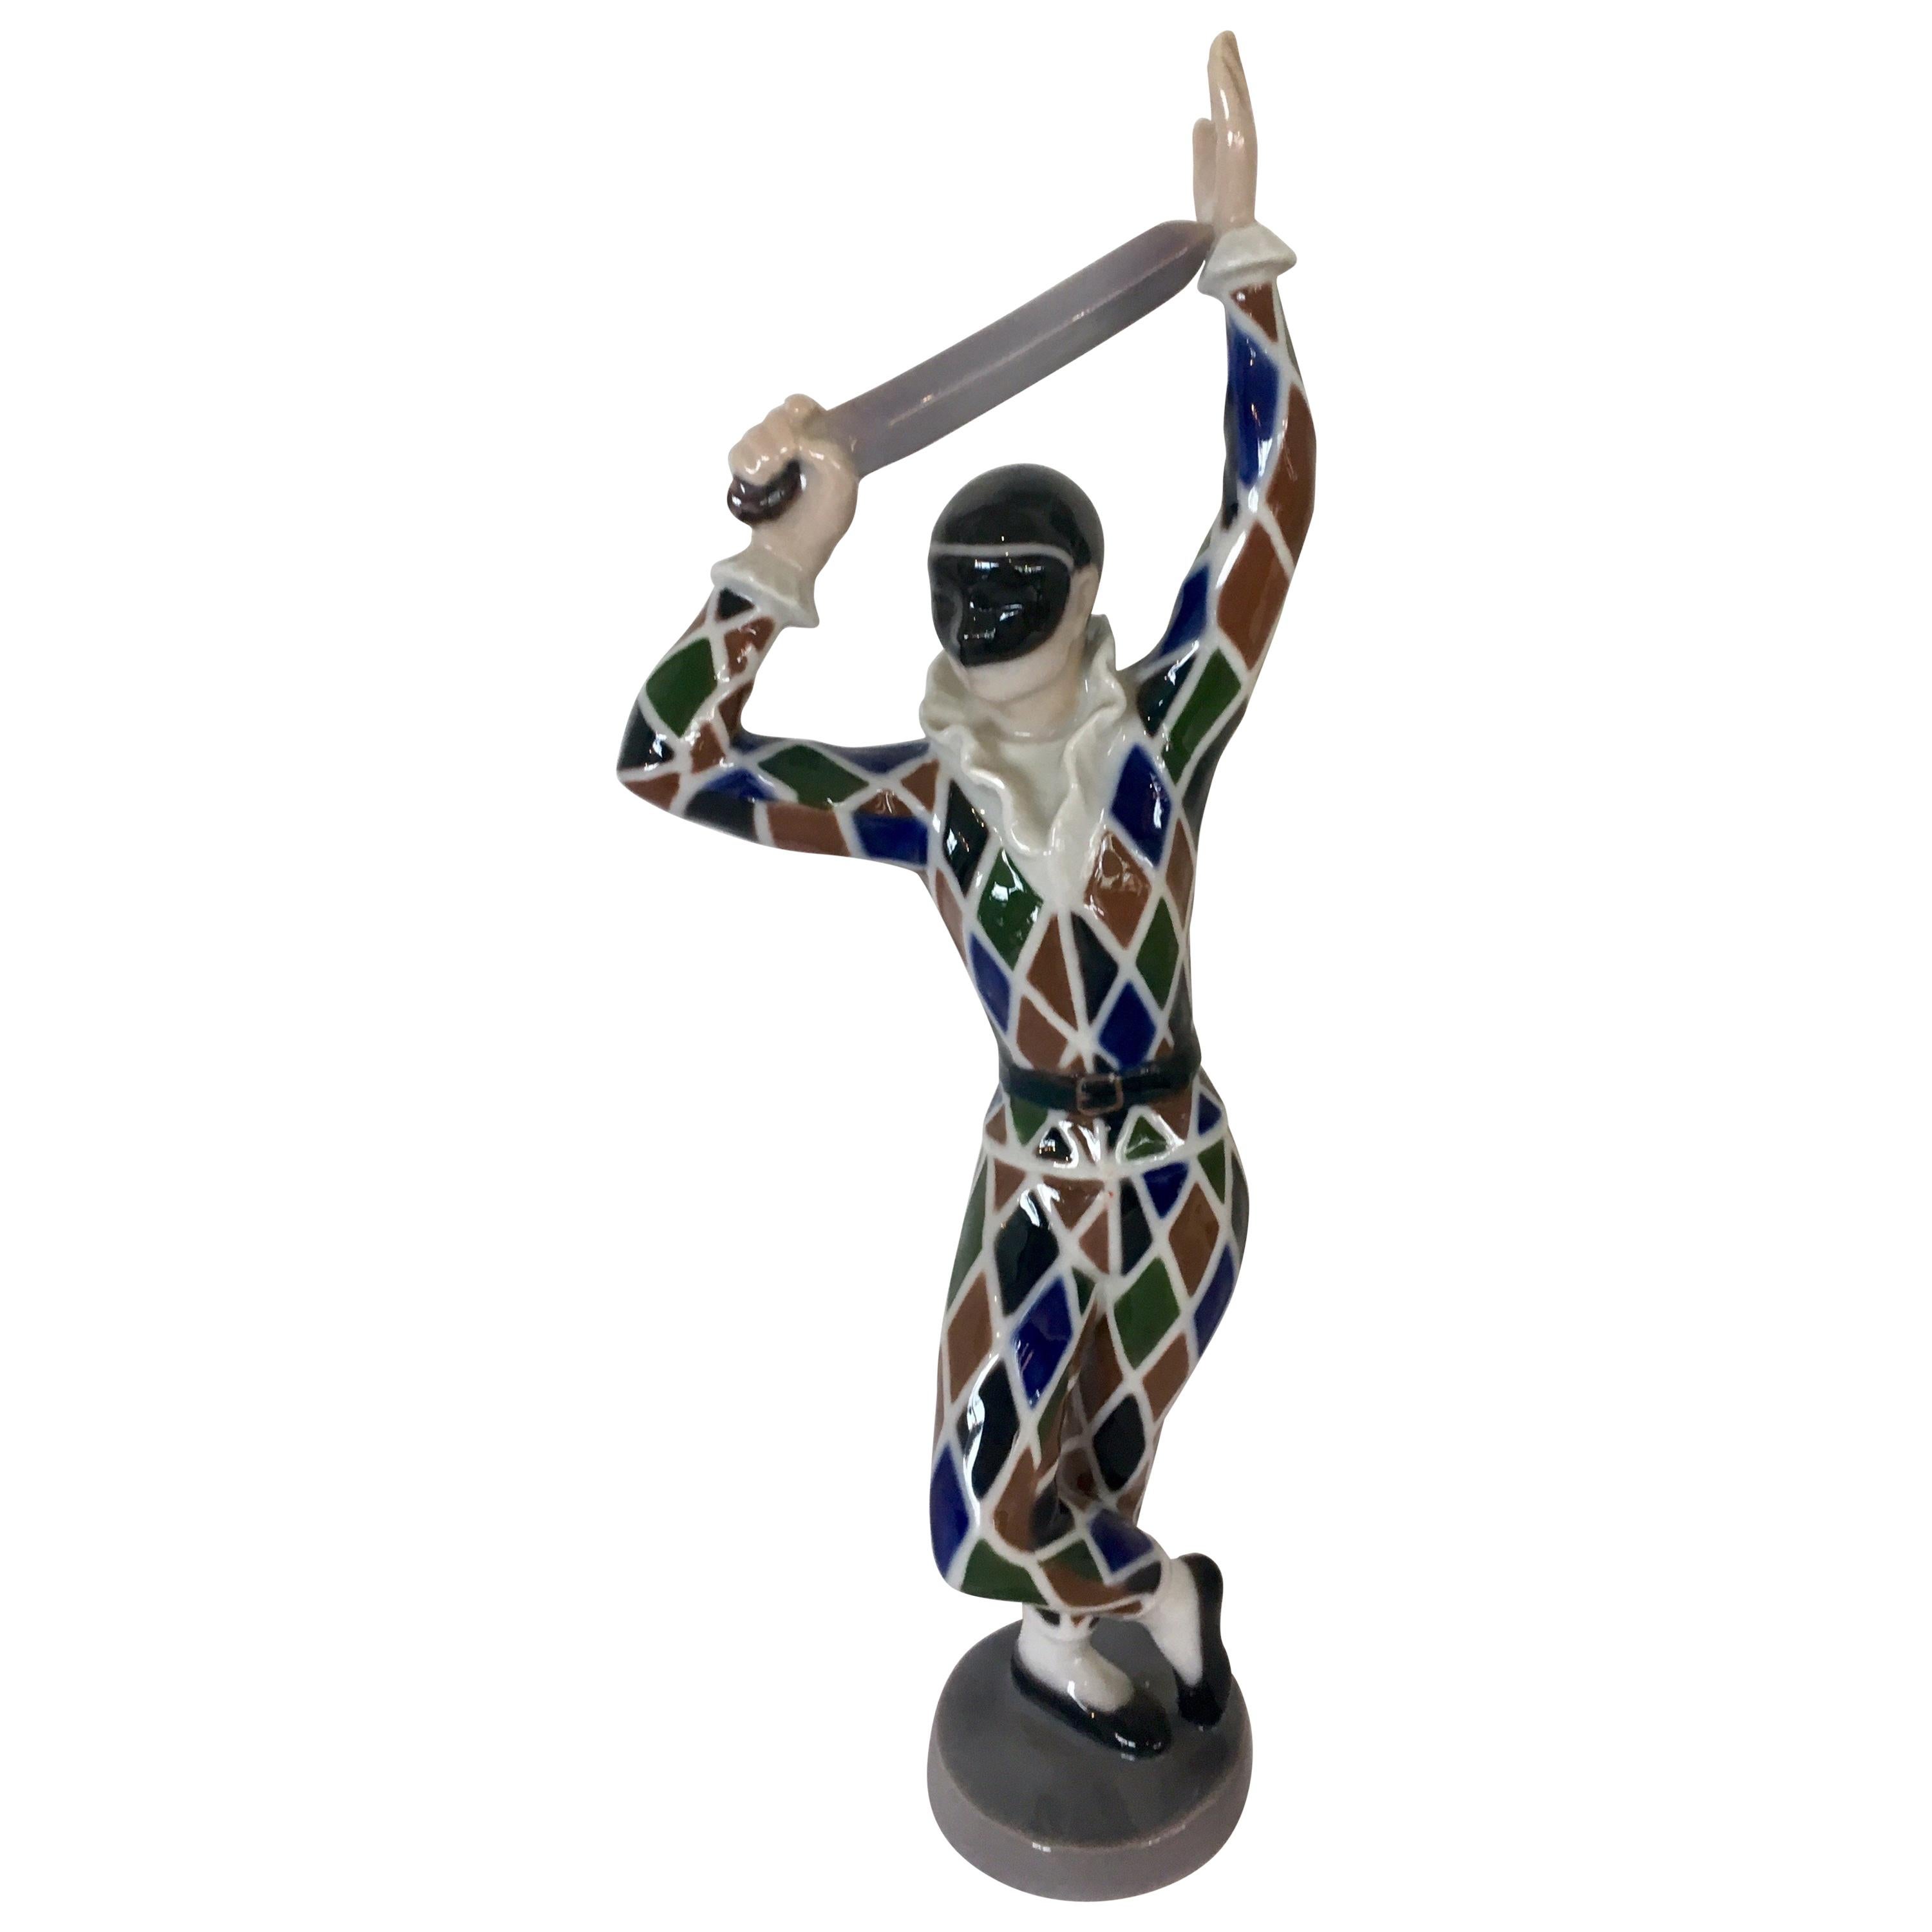 B&G Porcelain Made in Denmark Copenhagen Joker Figurine Harlequin Circus Series